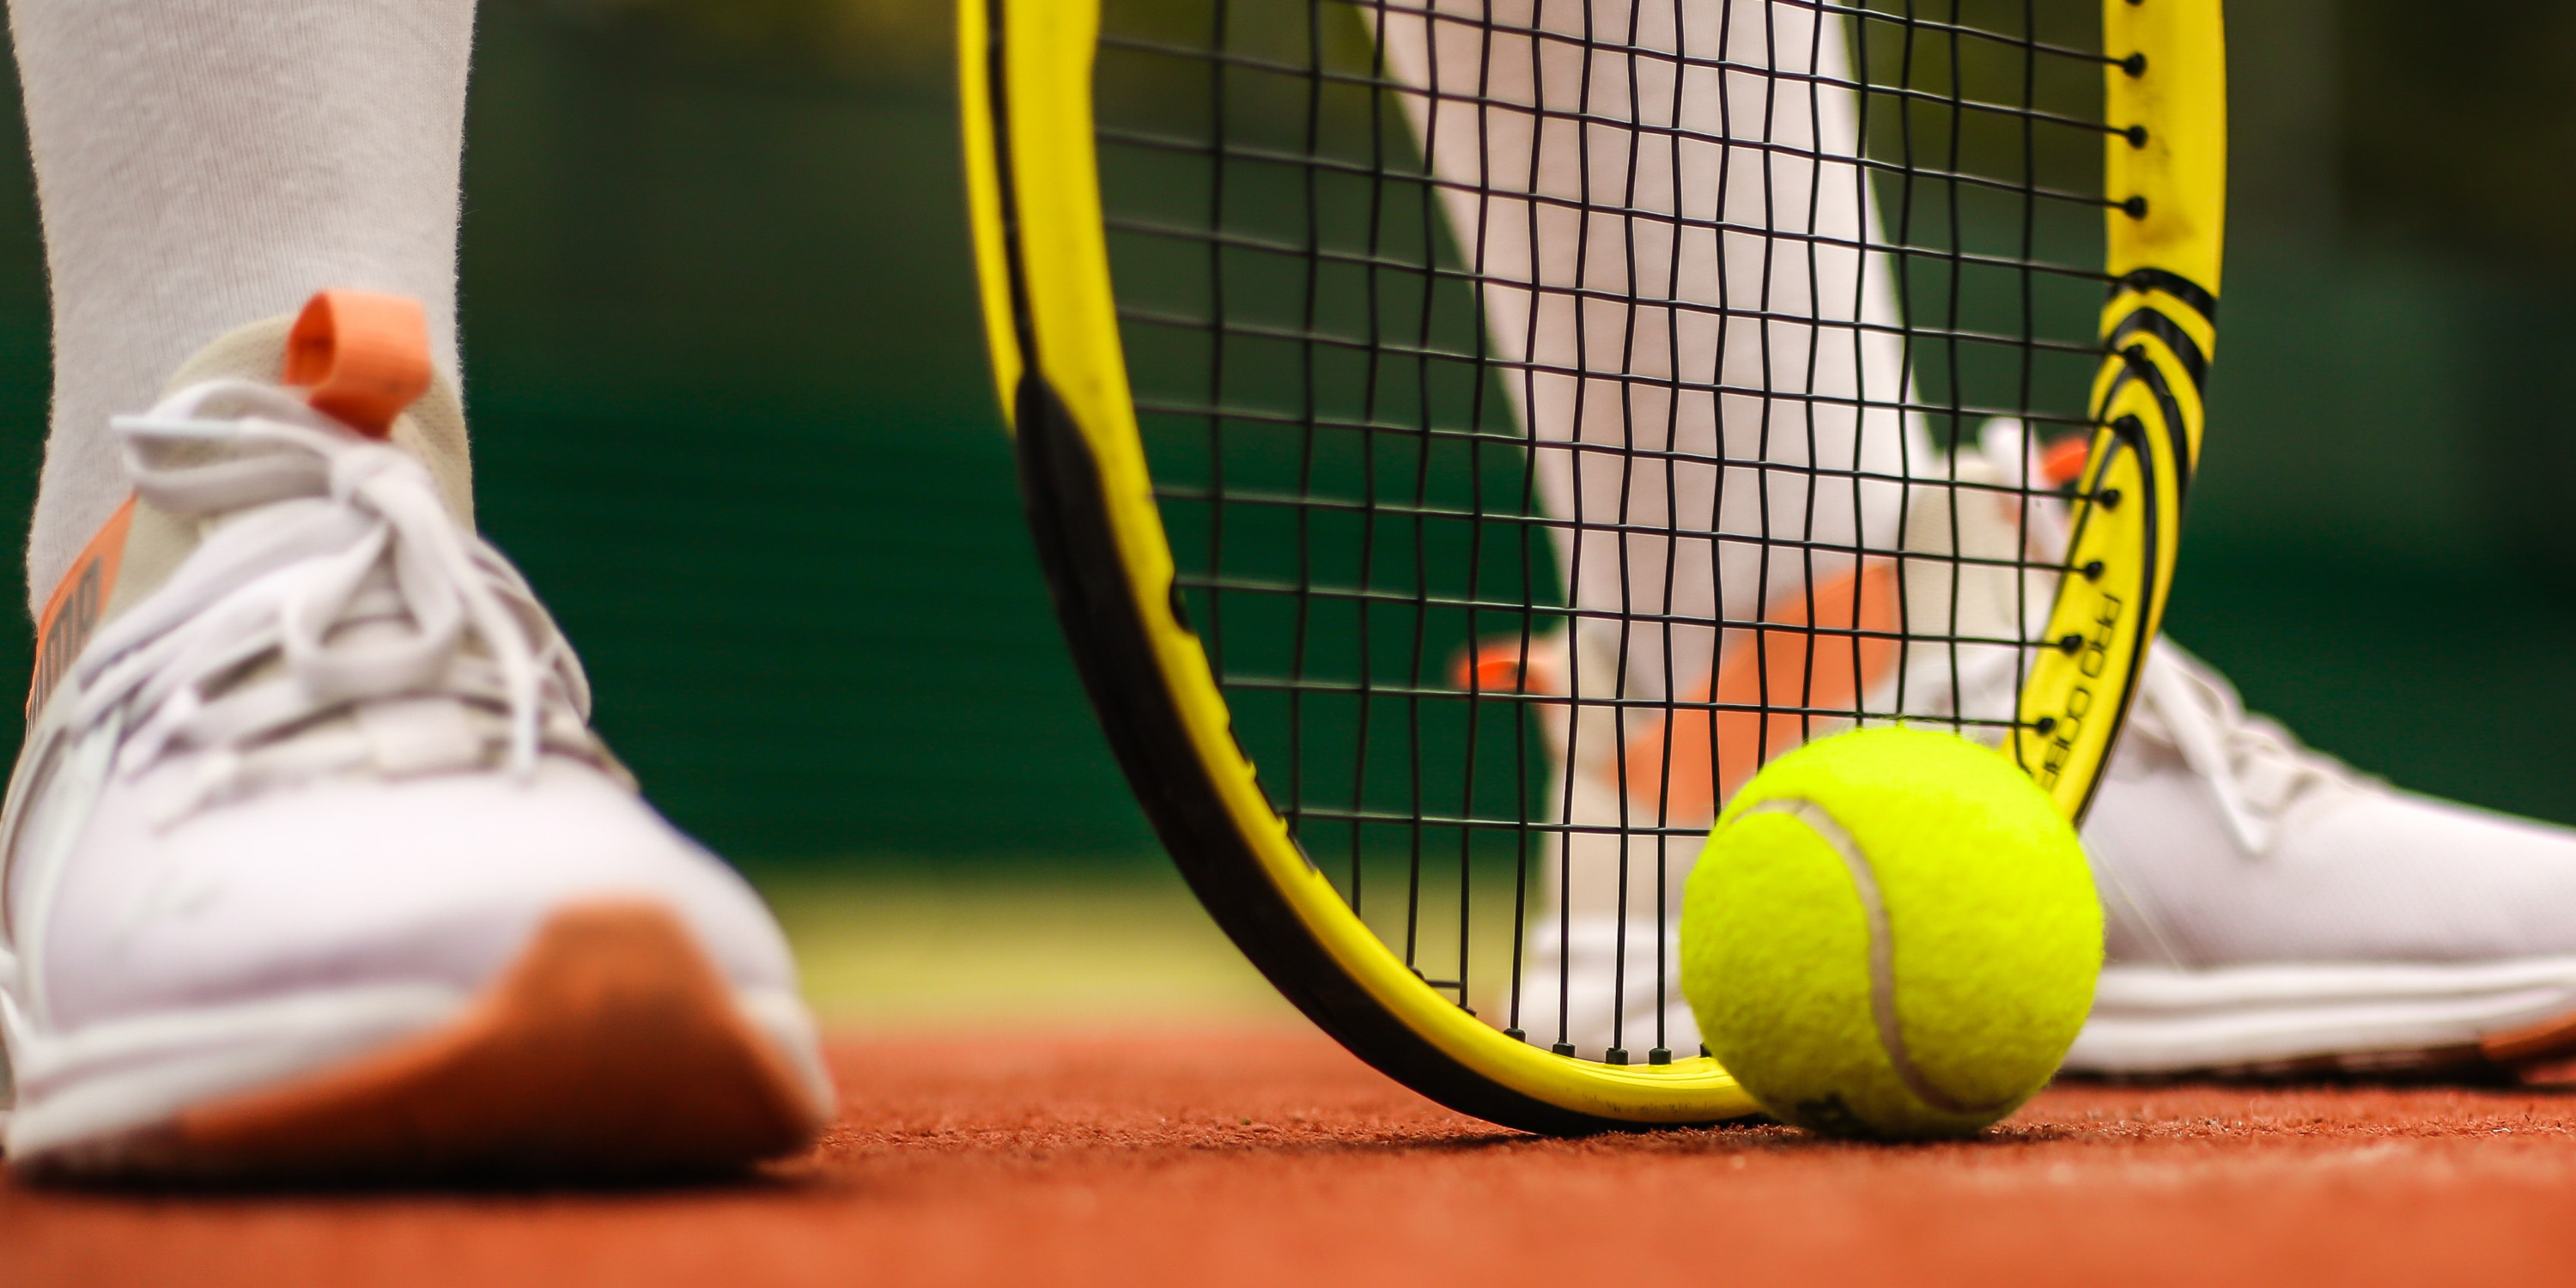 Рейтинги WTA и ATP: какие позиции занимают украинские теннисисты